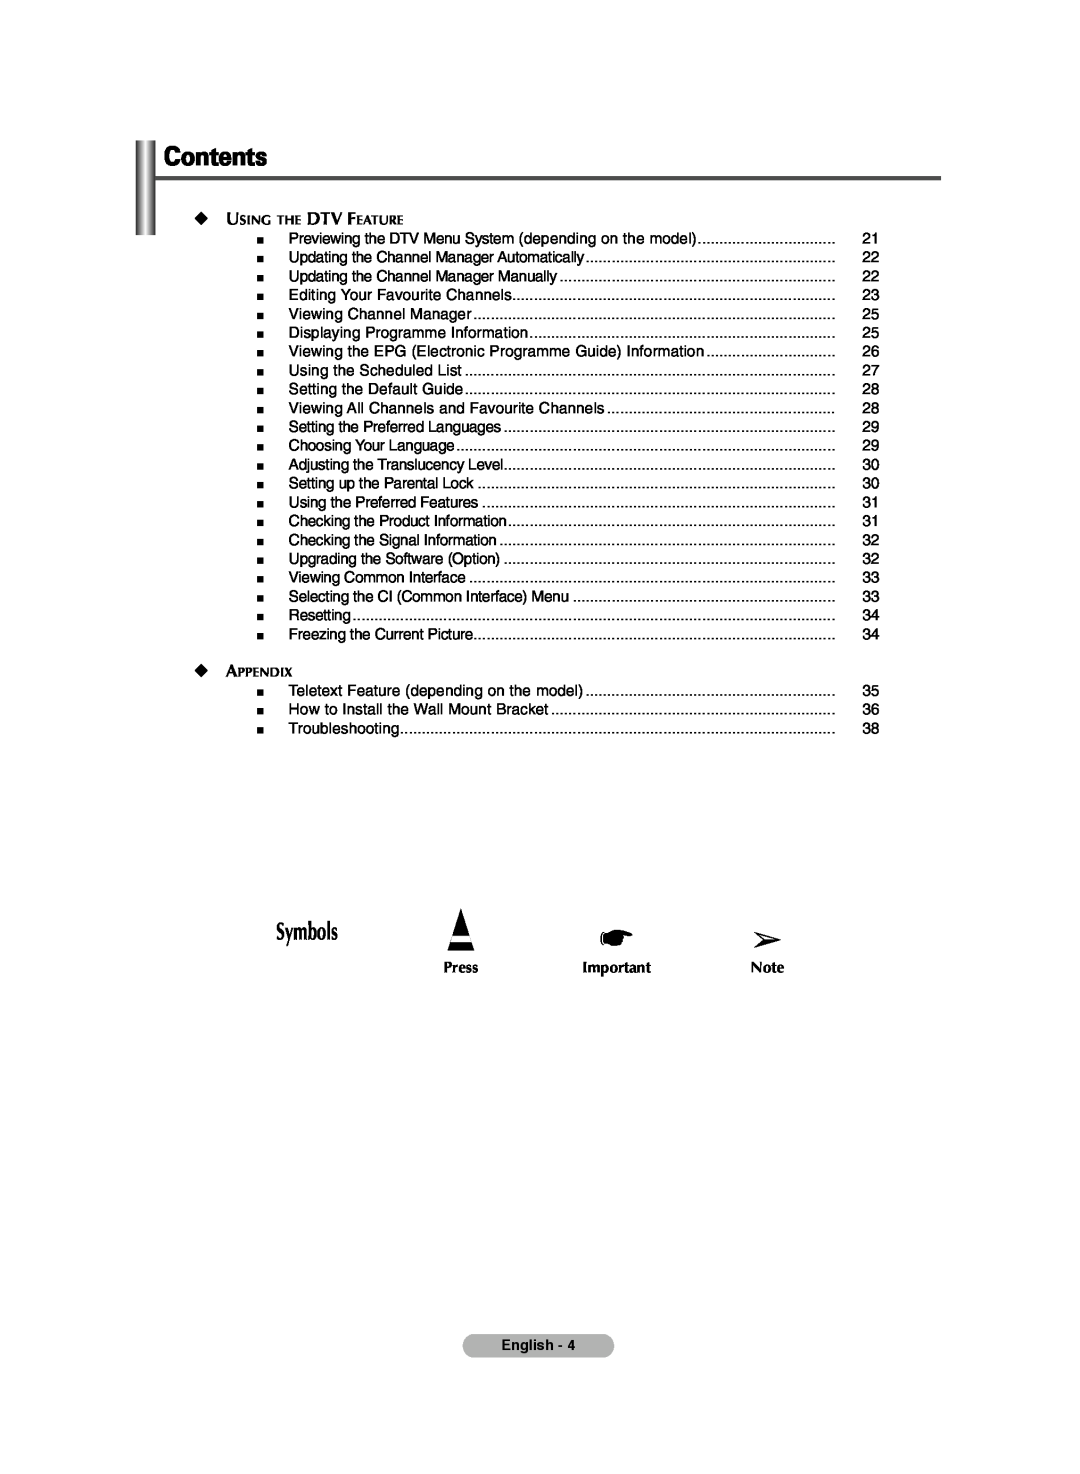 Samsung PS-42E71HD, PS-42E7HD manual Contents, Symbols, Press, Using The Dtv Feature, Appendix 